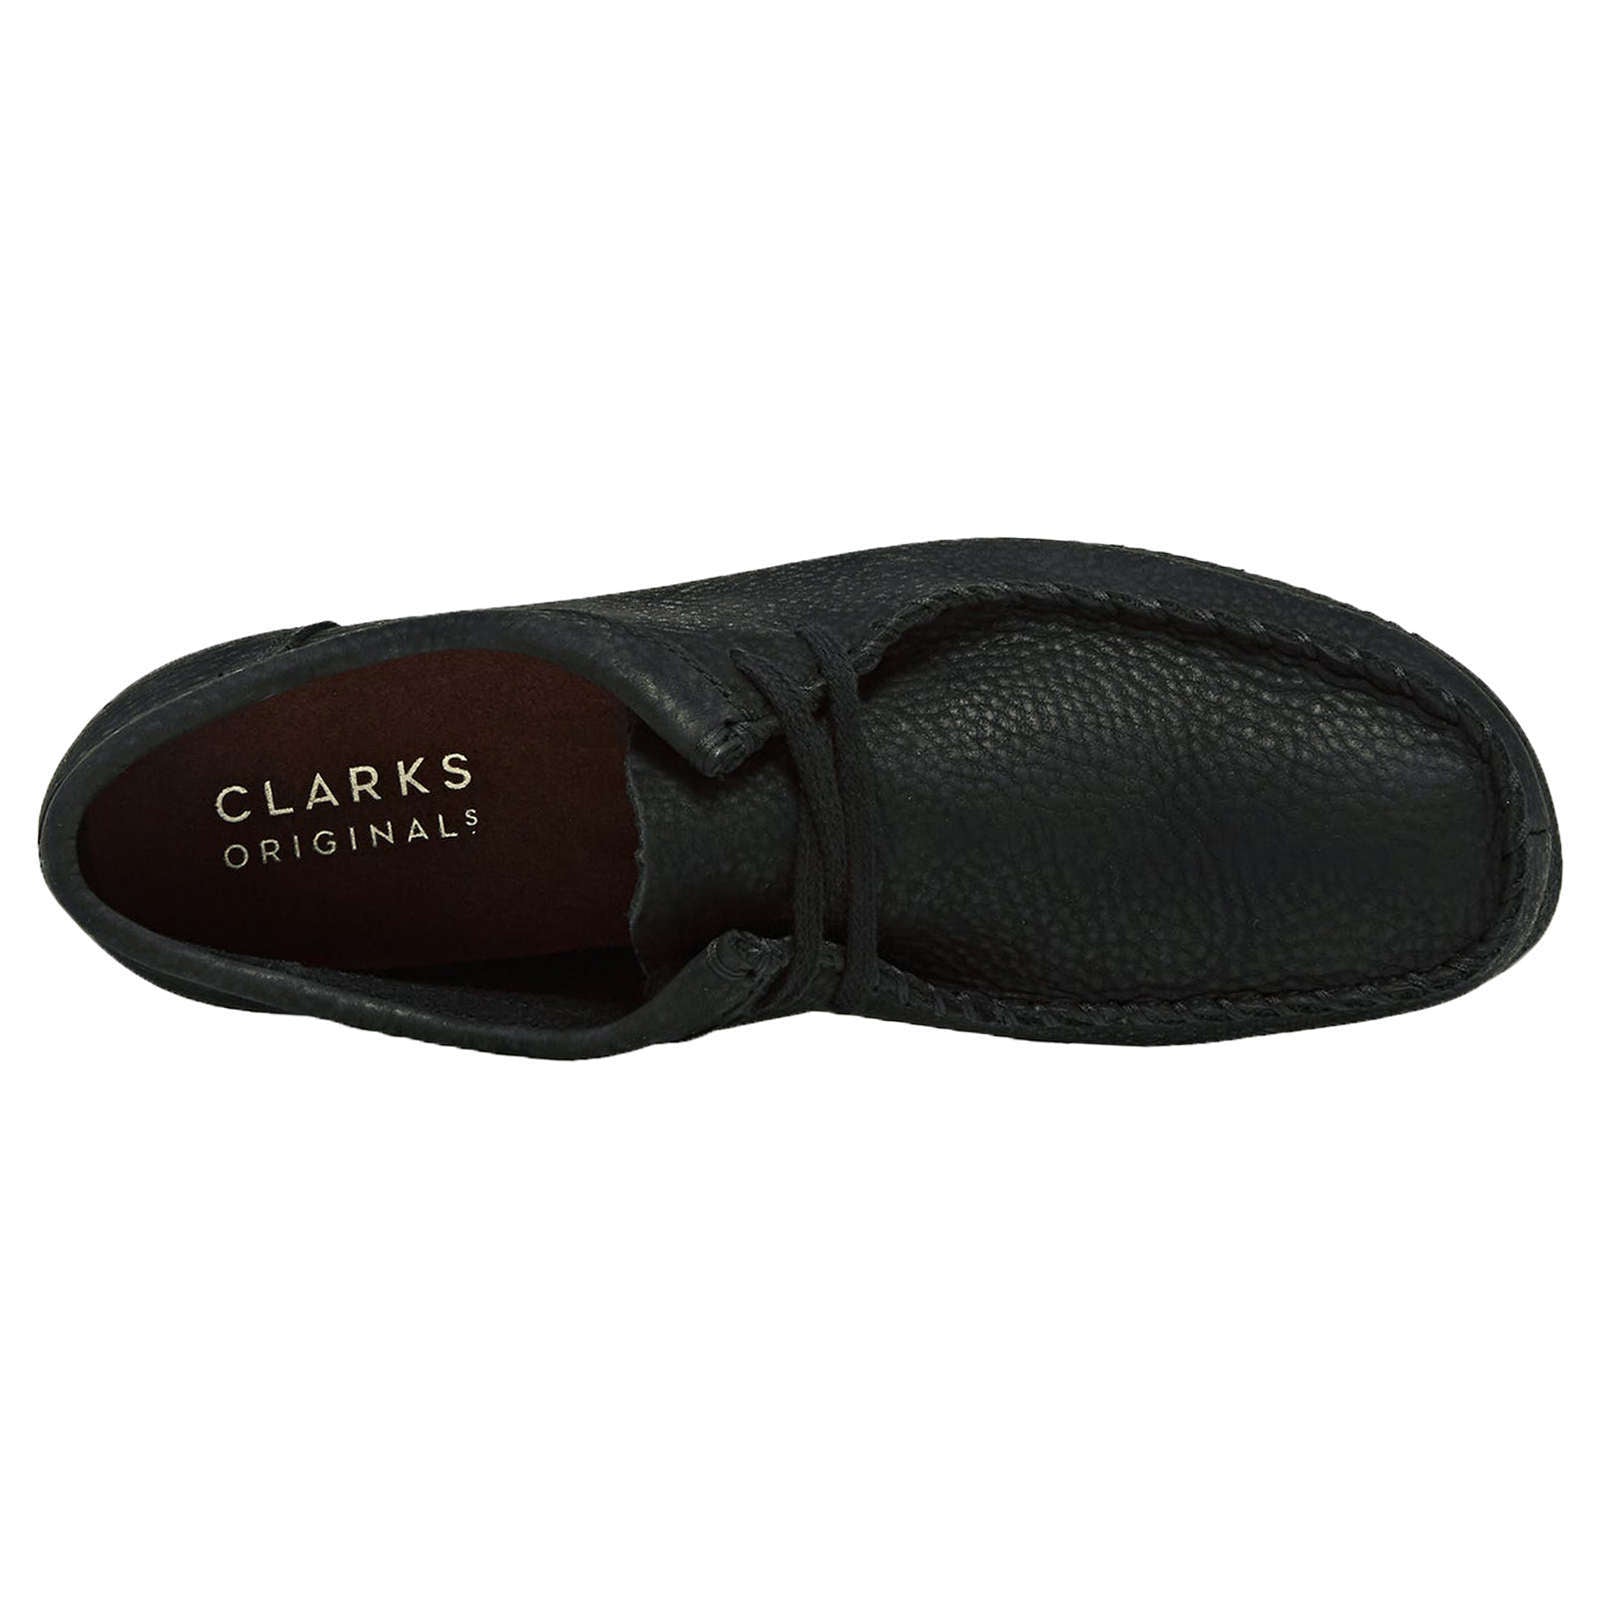 Clarks Originals Wallacraft Nubuck Leather Women's Shoes#color_black